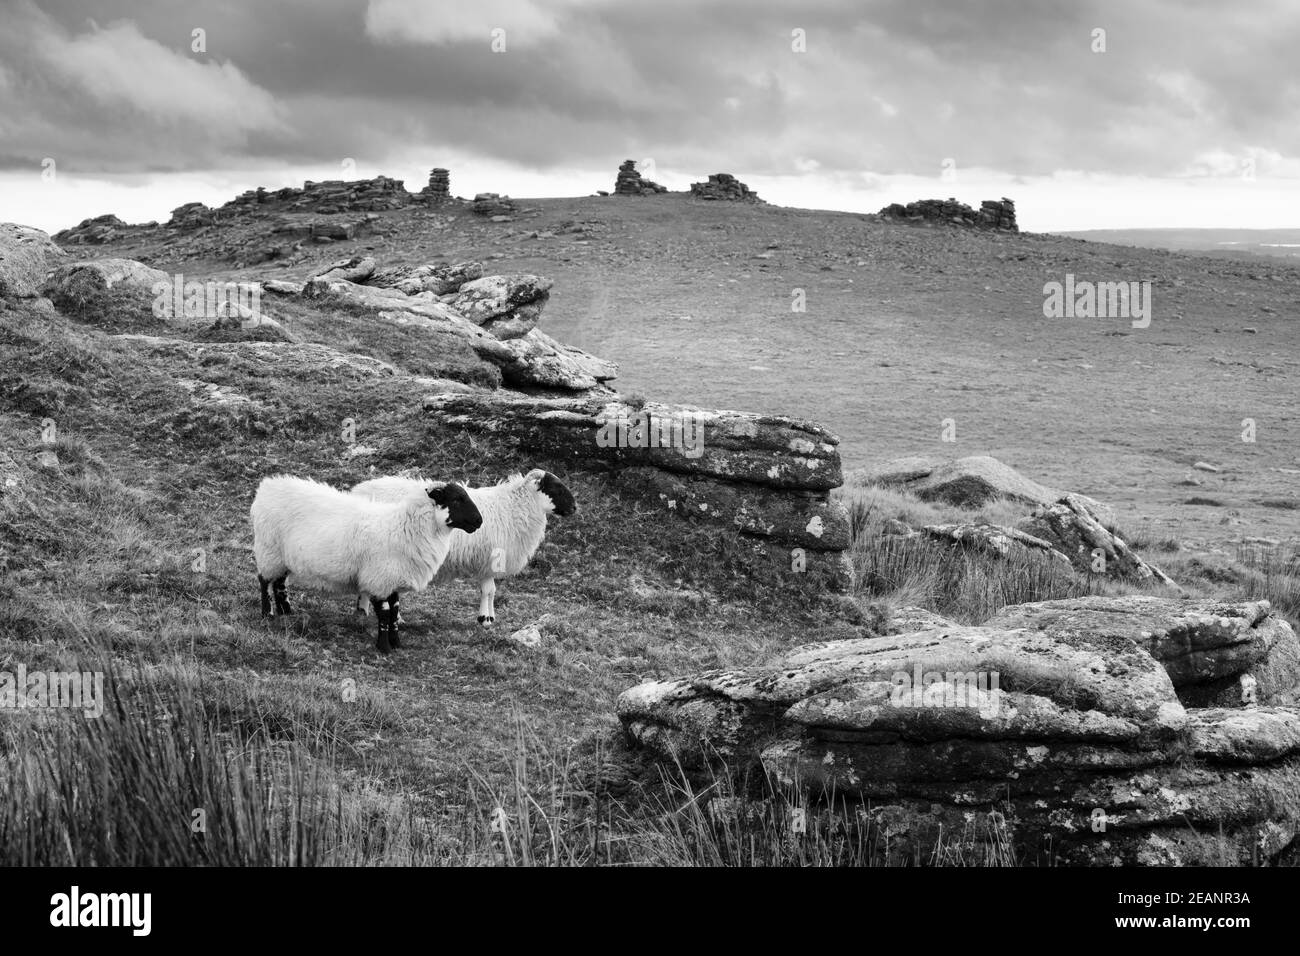 Deux moutons blancs sous Staple Tor près de Merrivale, parc national de Dartmoor, Devon, Angleterre, Royaume-Uni, Europe Banque D'Images